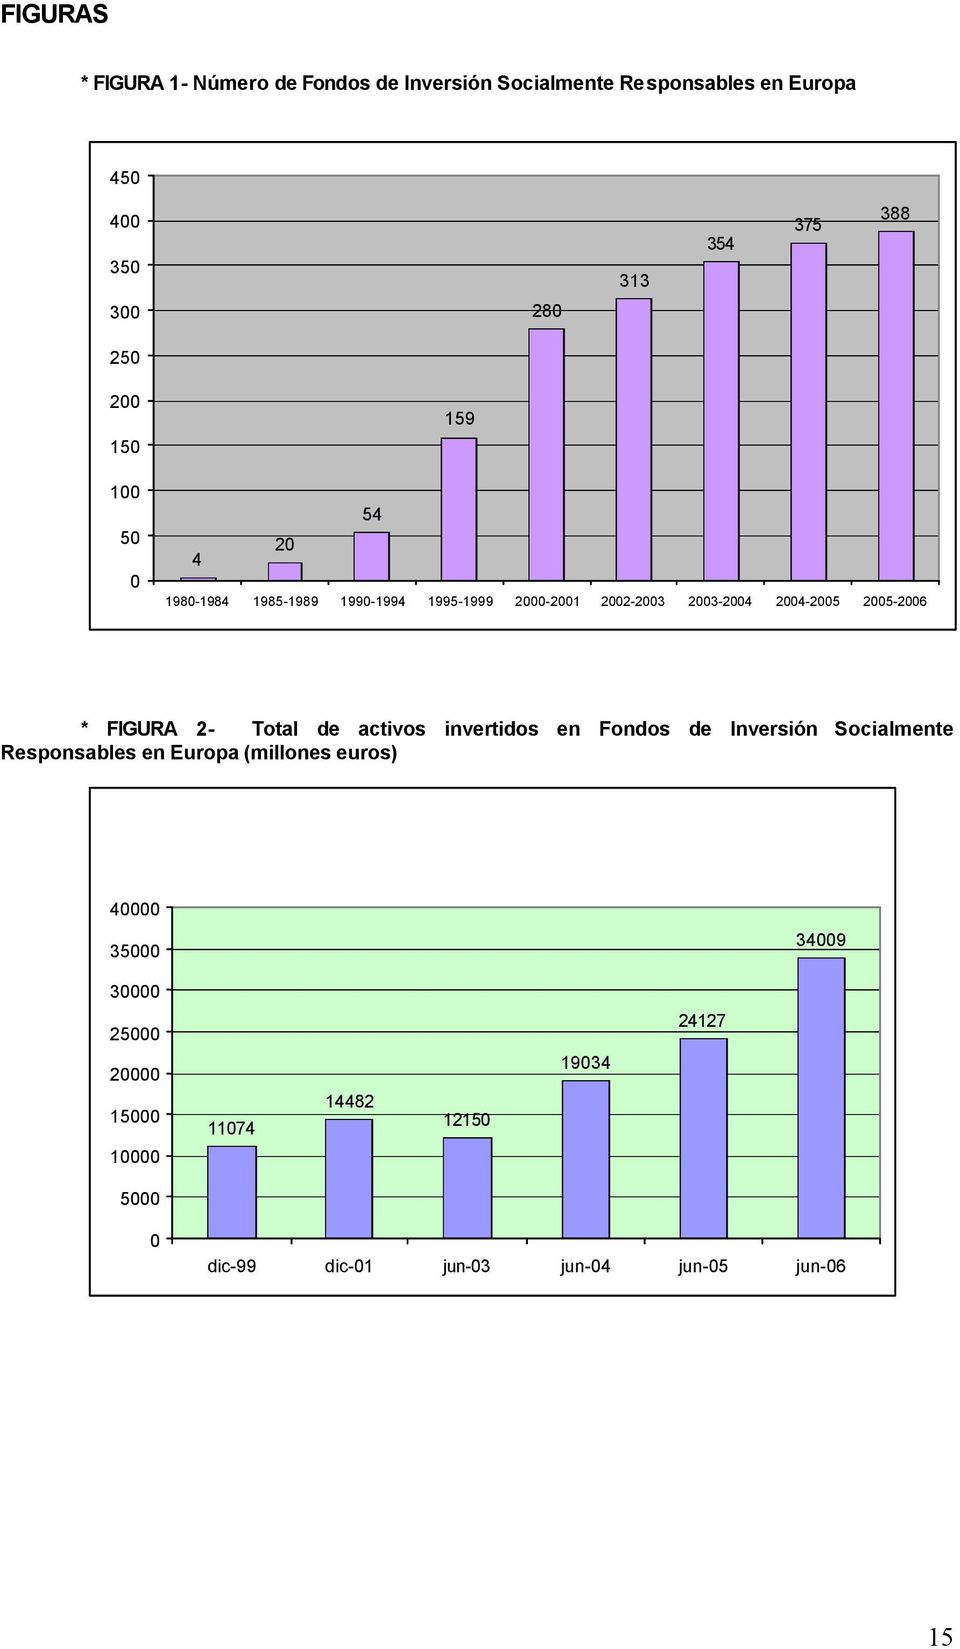 2005-2006 * FIGURA 2- Total de activos invertidos en Fondos de Inversión Socialmente Responsables en Europa (millones